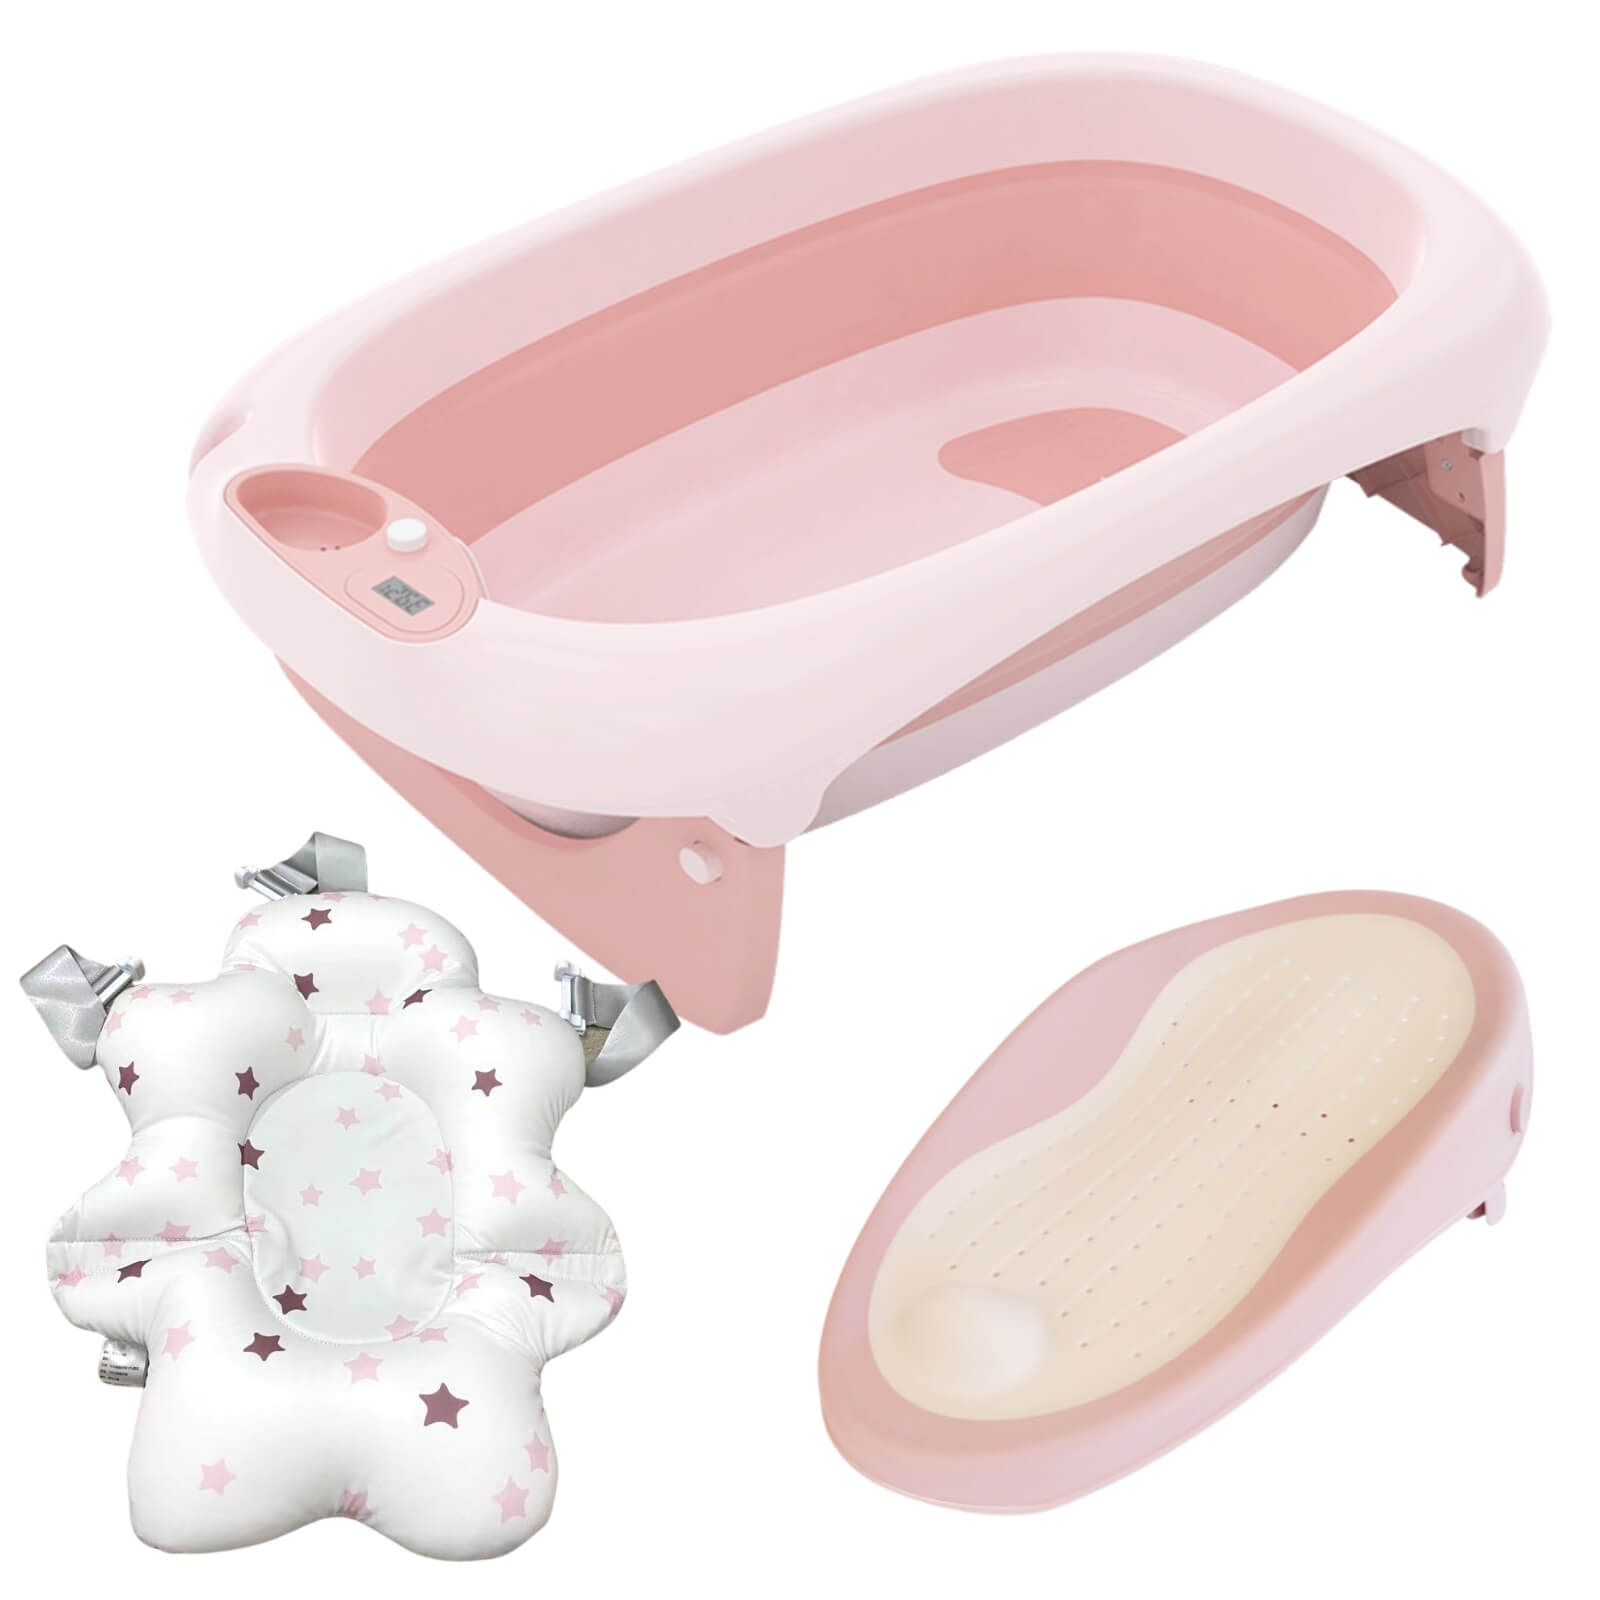 3 in 1 Foldable Baby Bath Tub & Bath Seats -Pink